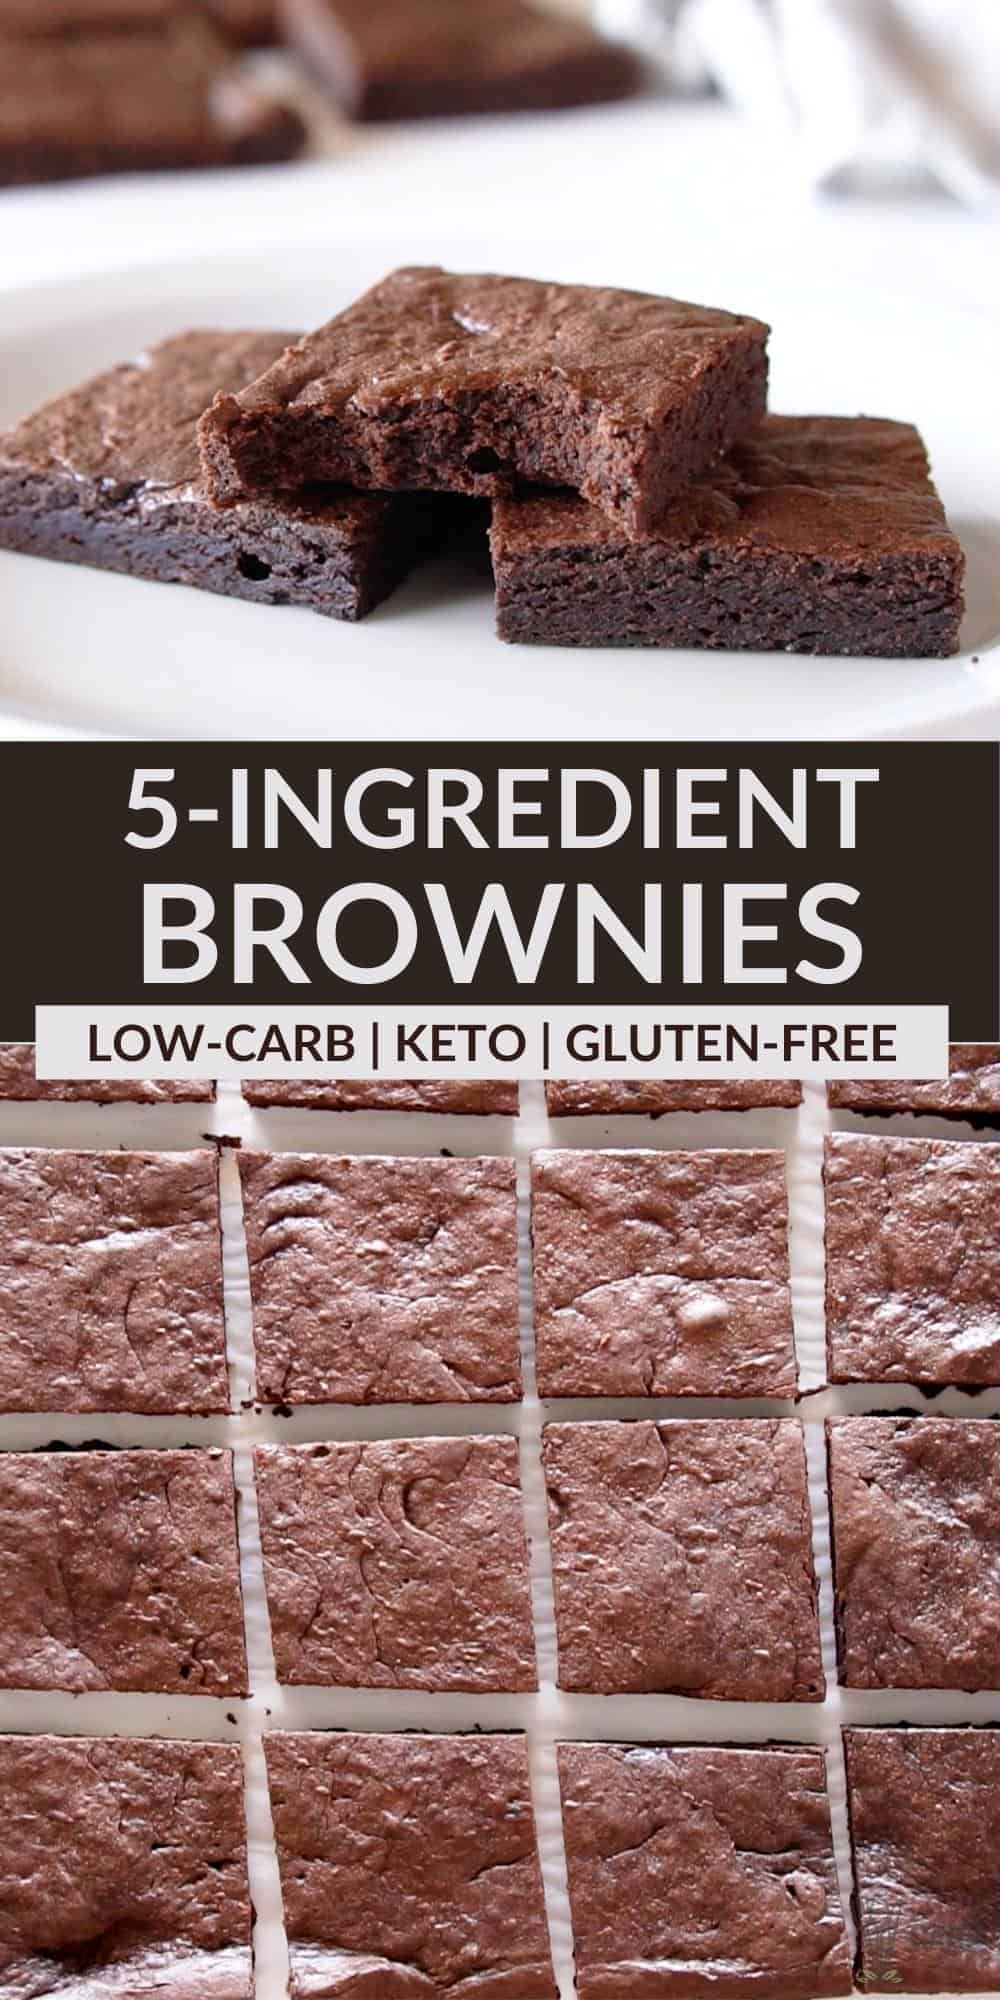 5 ingredient keto brownies pinterest image.